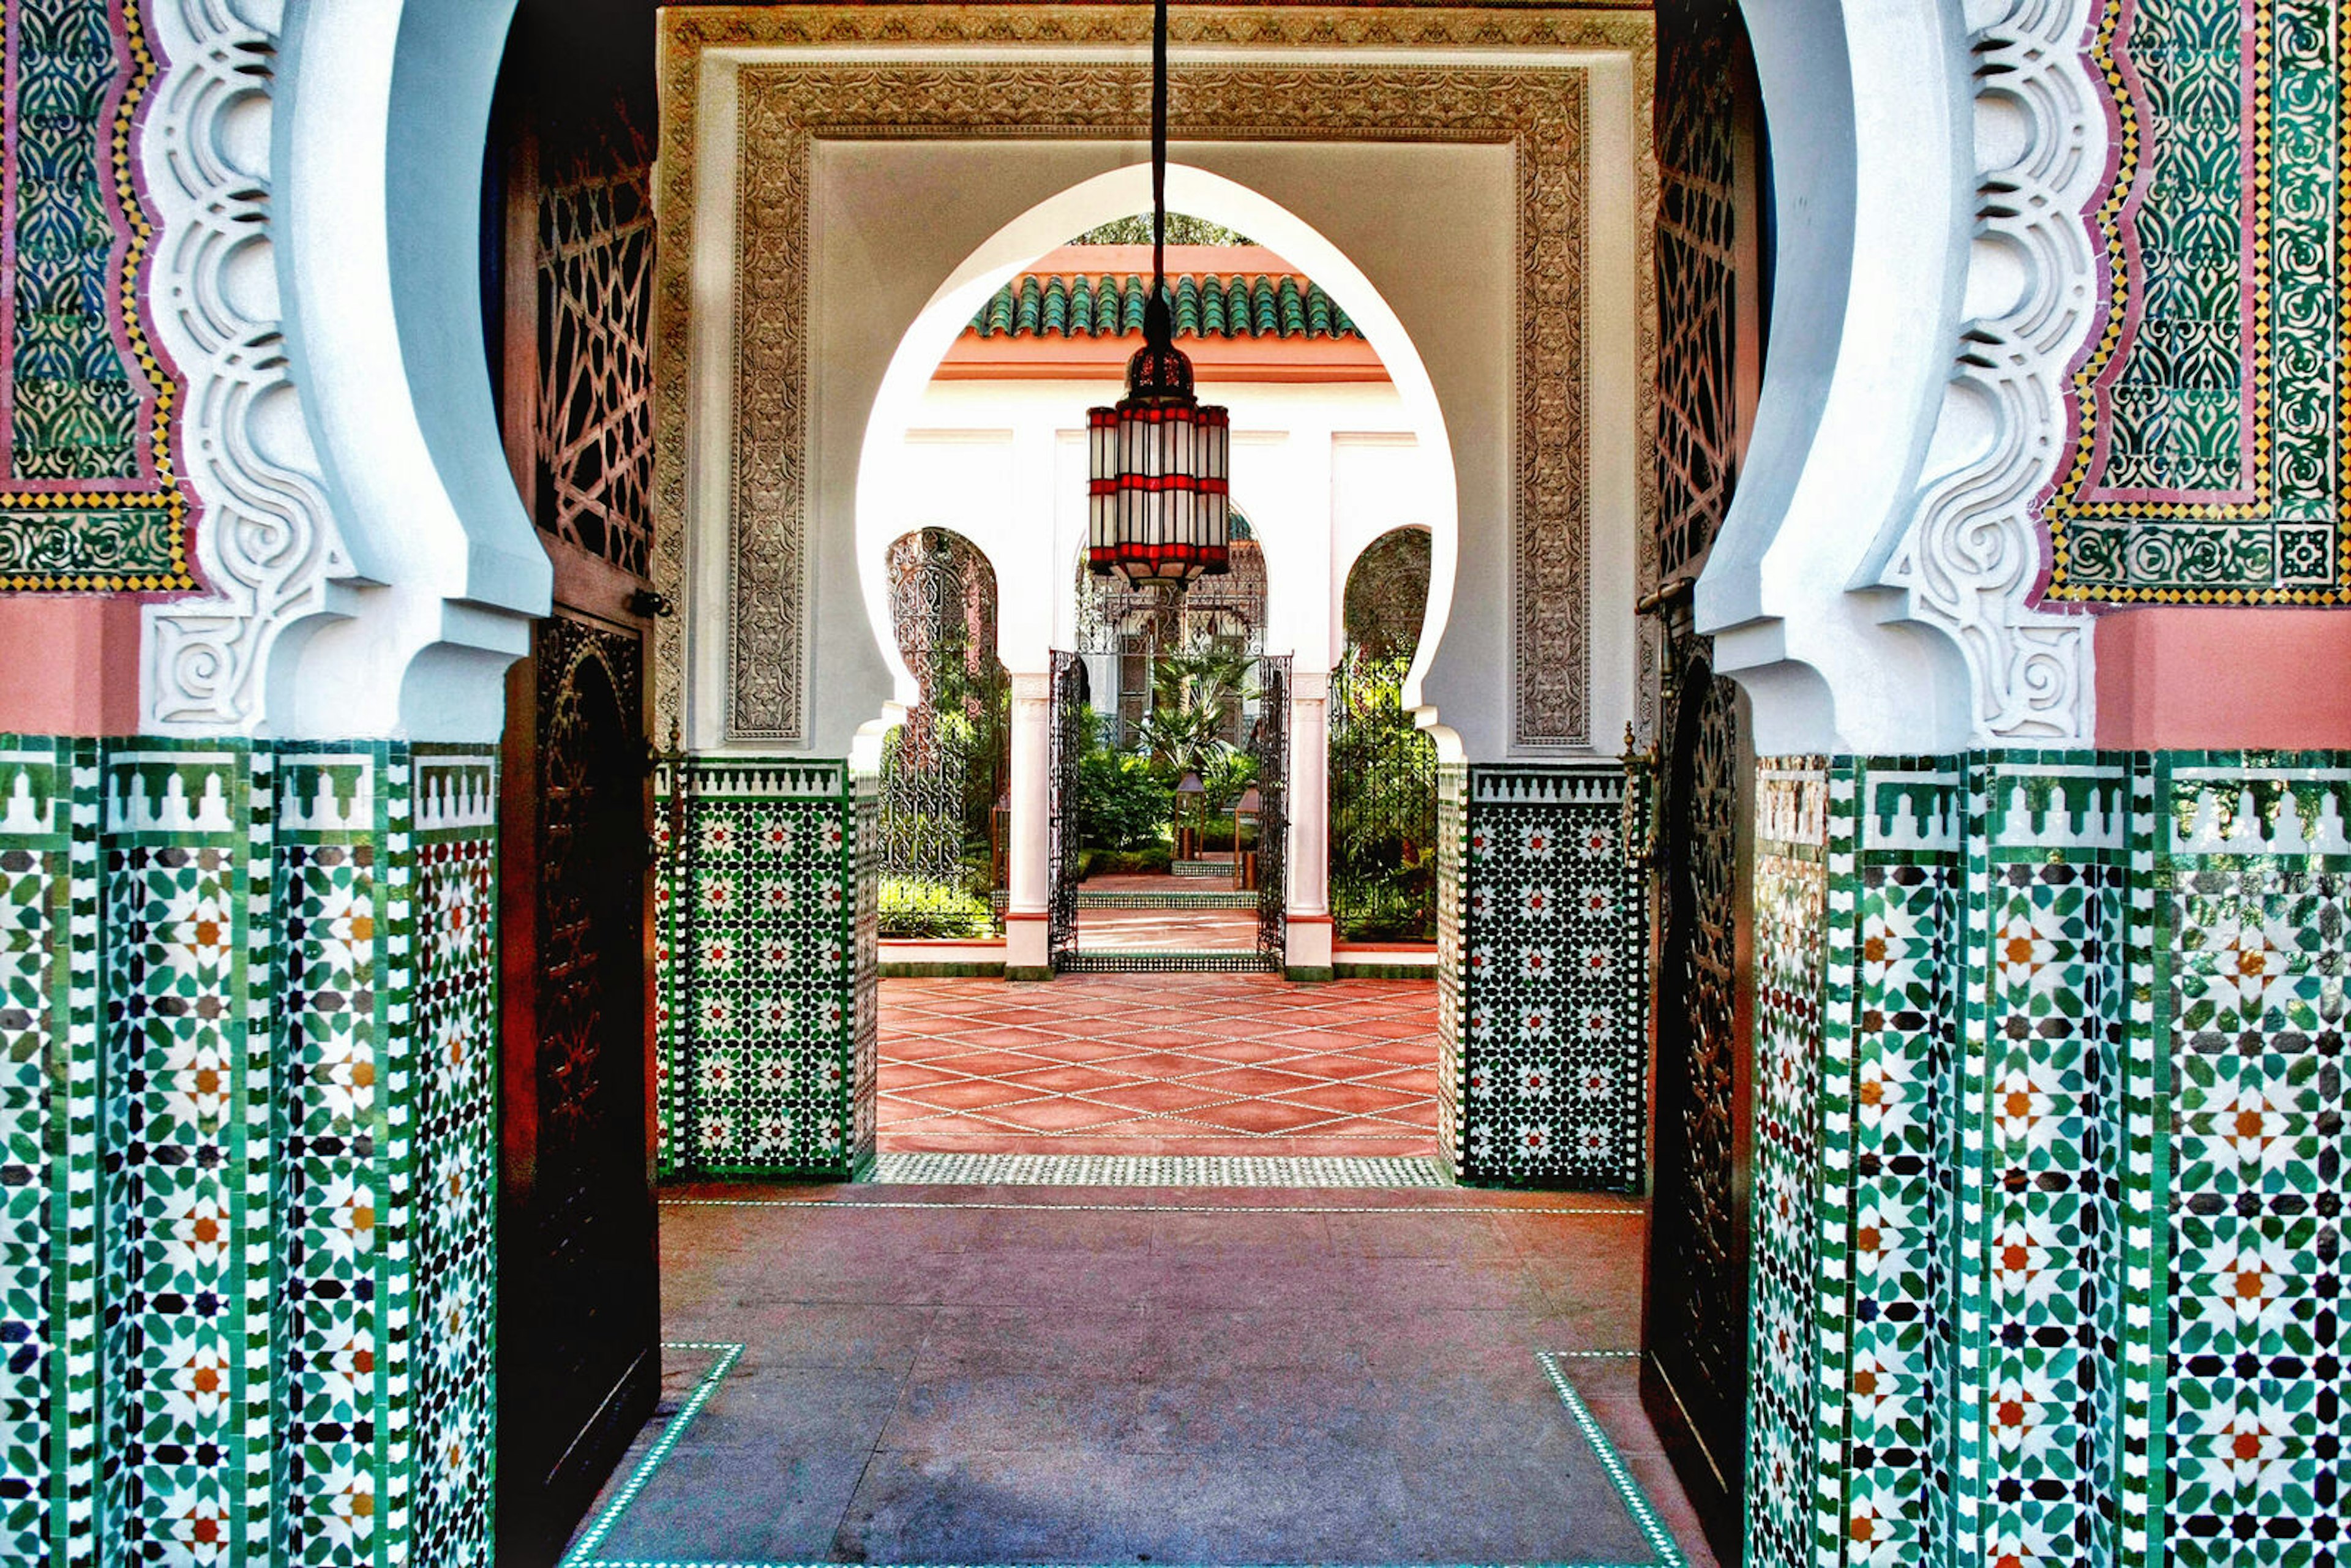 Một buổi trải nghiệm spa tại Marrakesh sẽ khiến bạn thư giãn và tận hưởng trọn vẹn những đặc trưng của nền văn hóa Maroc. Hình ảnh liên quan đến spa Marrakesh sẽ giúp bạn visualise và mong chờ những phút giây thư giãn tuyệt vời. 